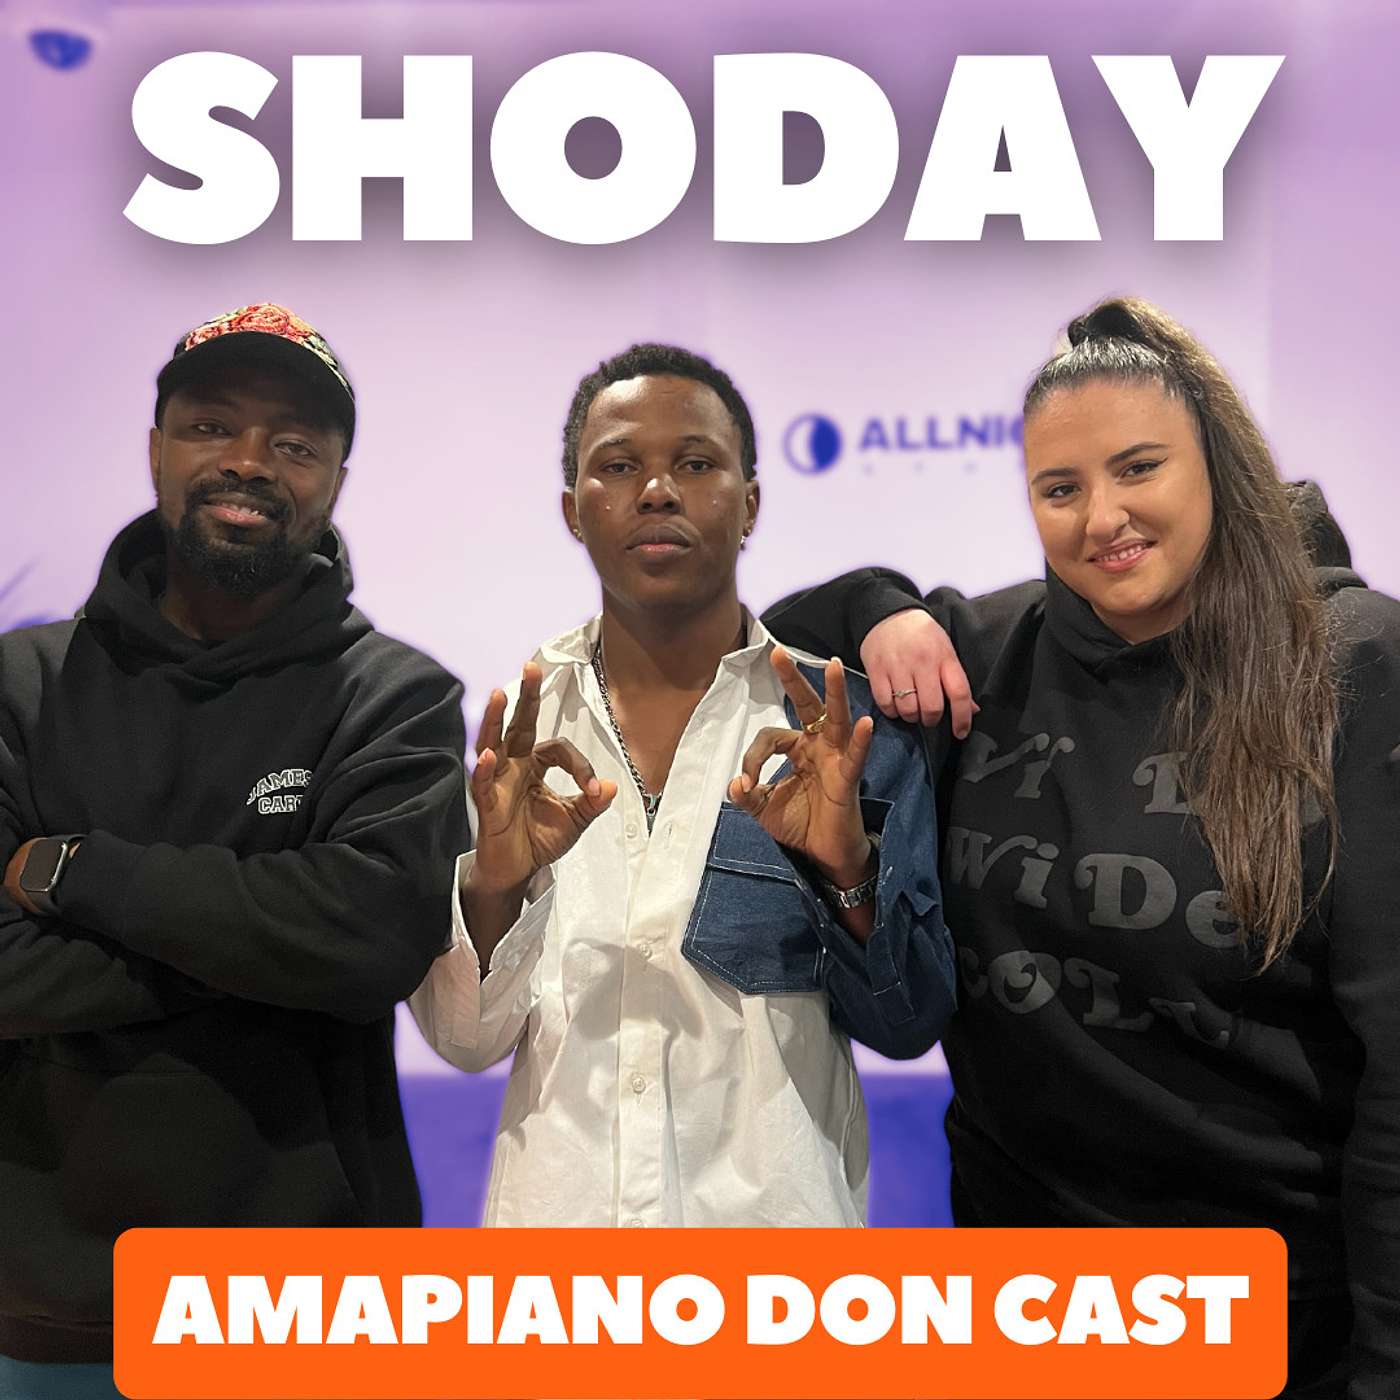 Shoday: “Amapiano Don Cast”